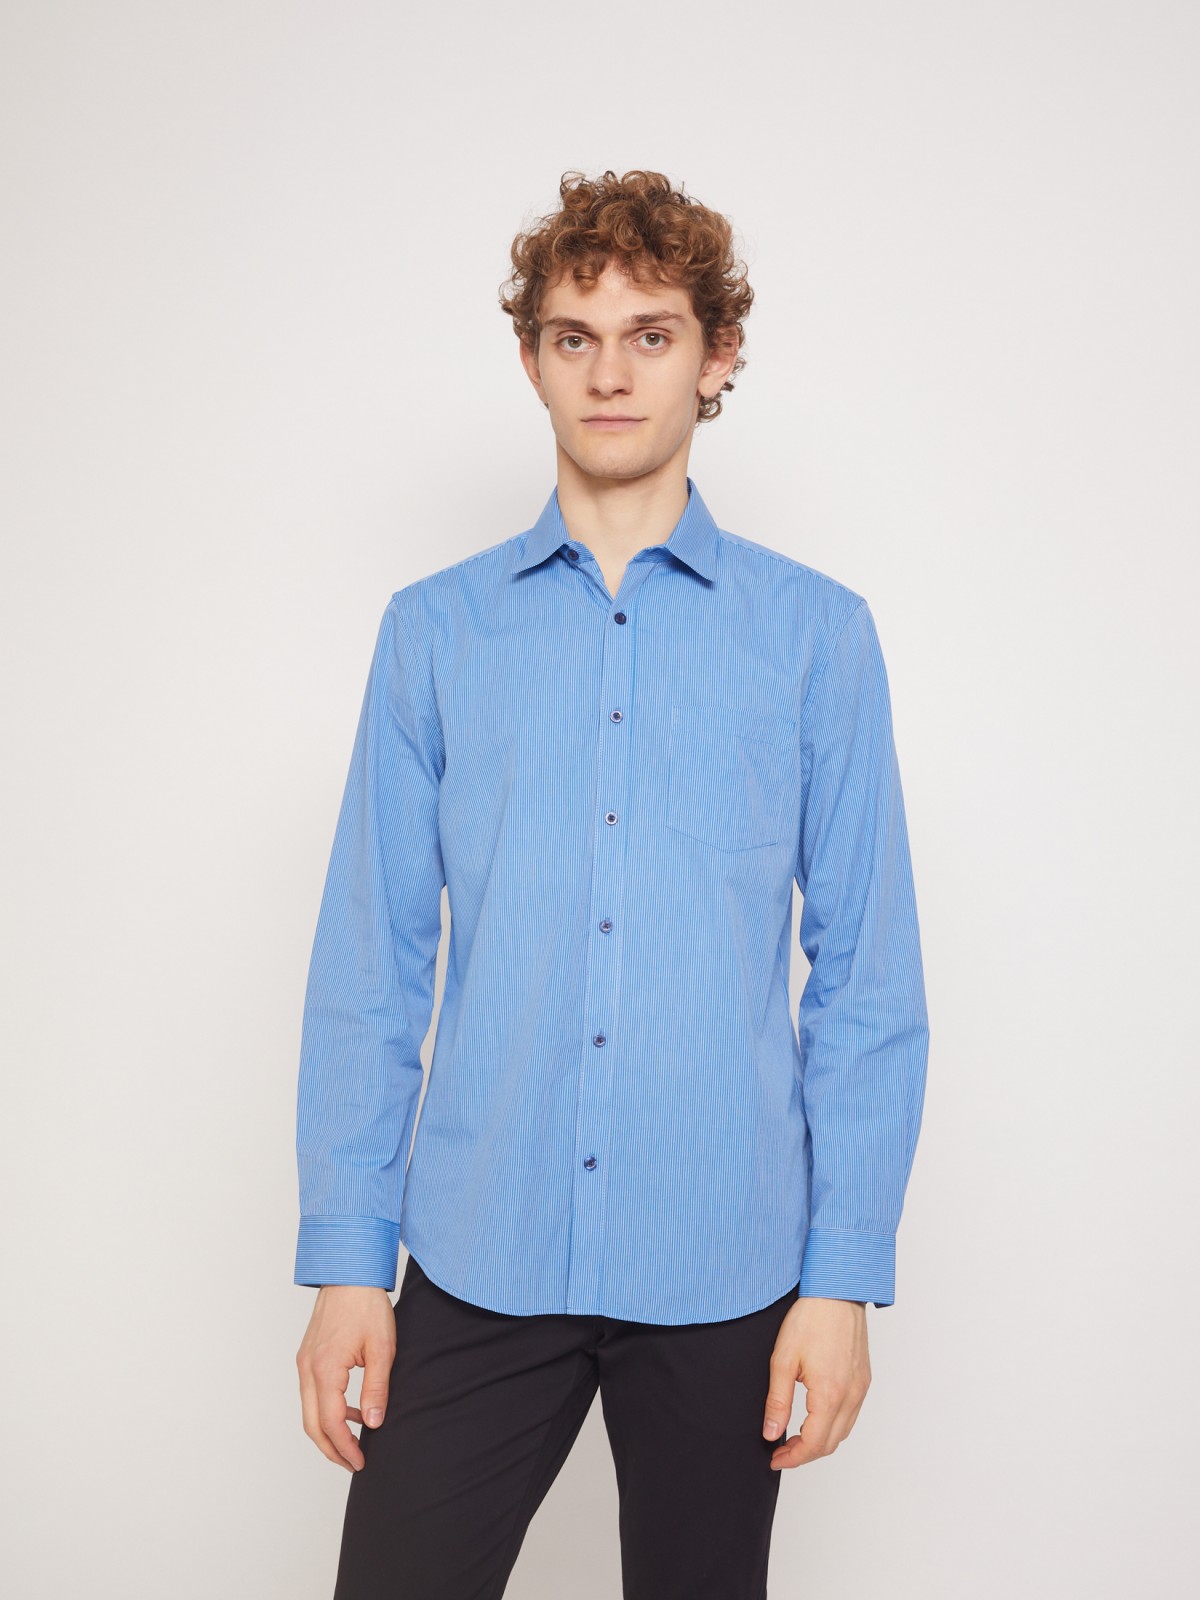 Рубашка с узором в тонкую полоску zolla 011332162012, цвет голубой, размер S - фото 2